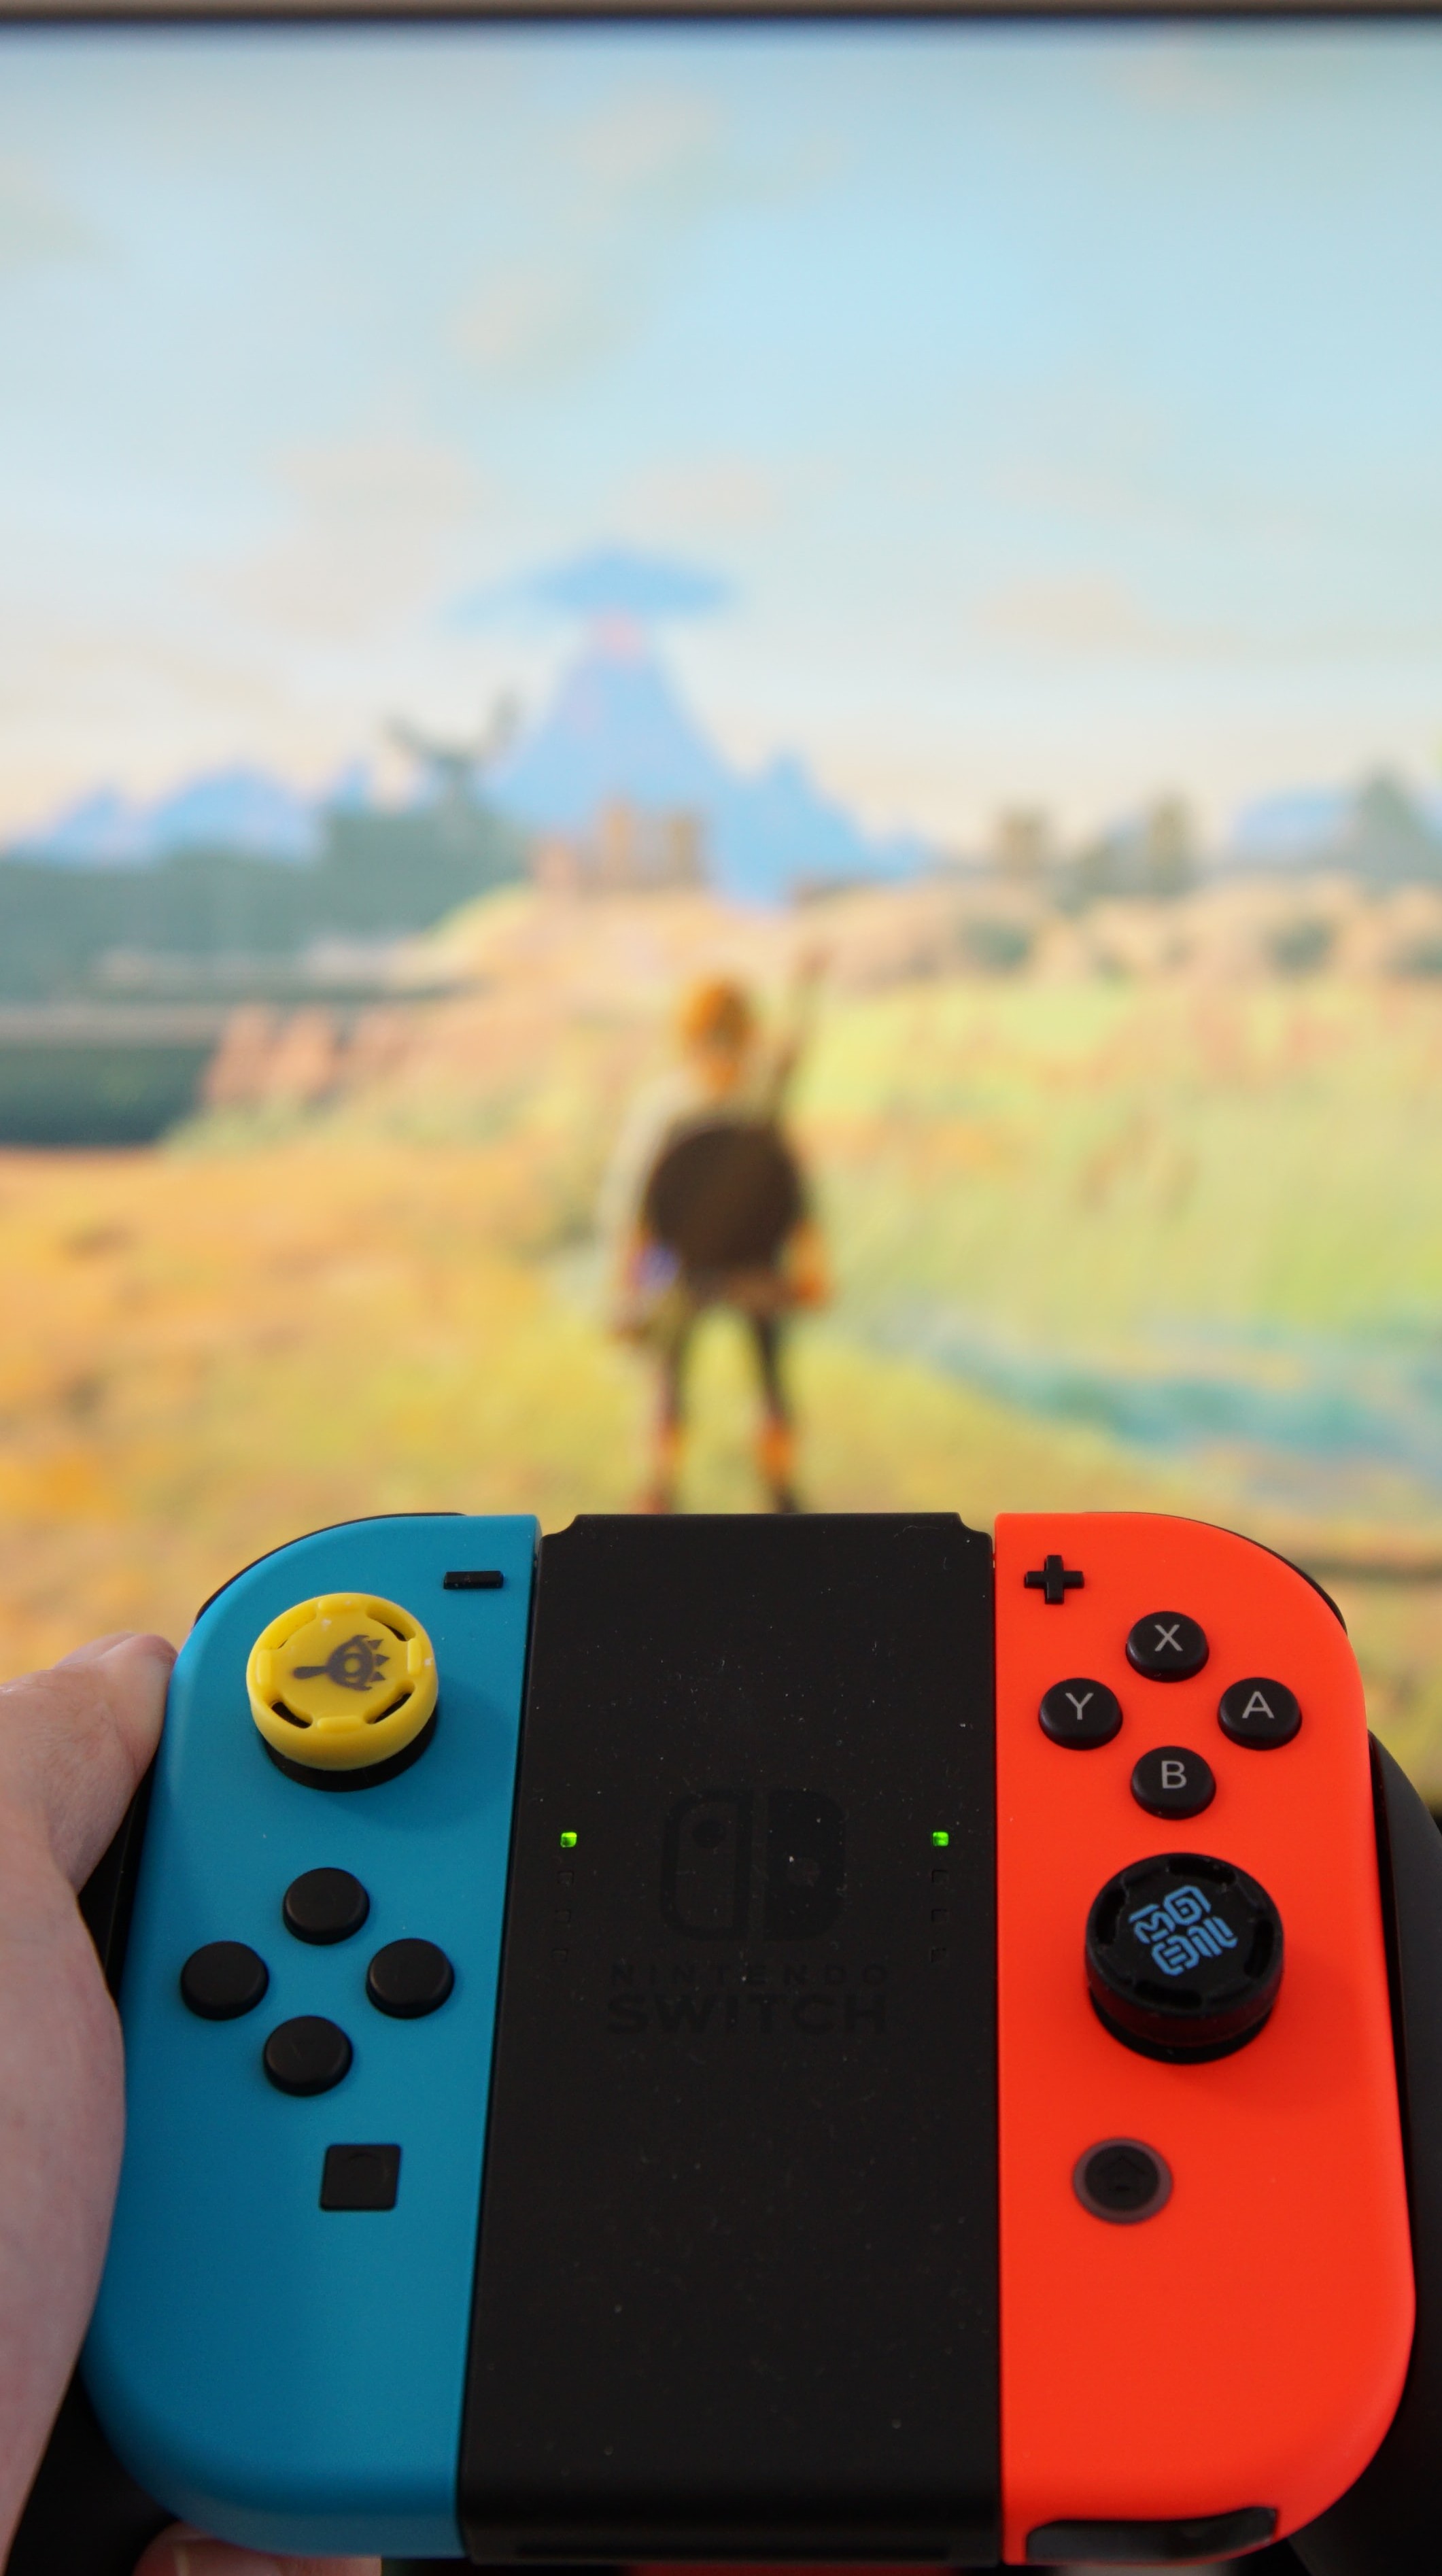 Nintendo Switch: seis fatos sobre o console para saber antes de